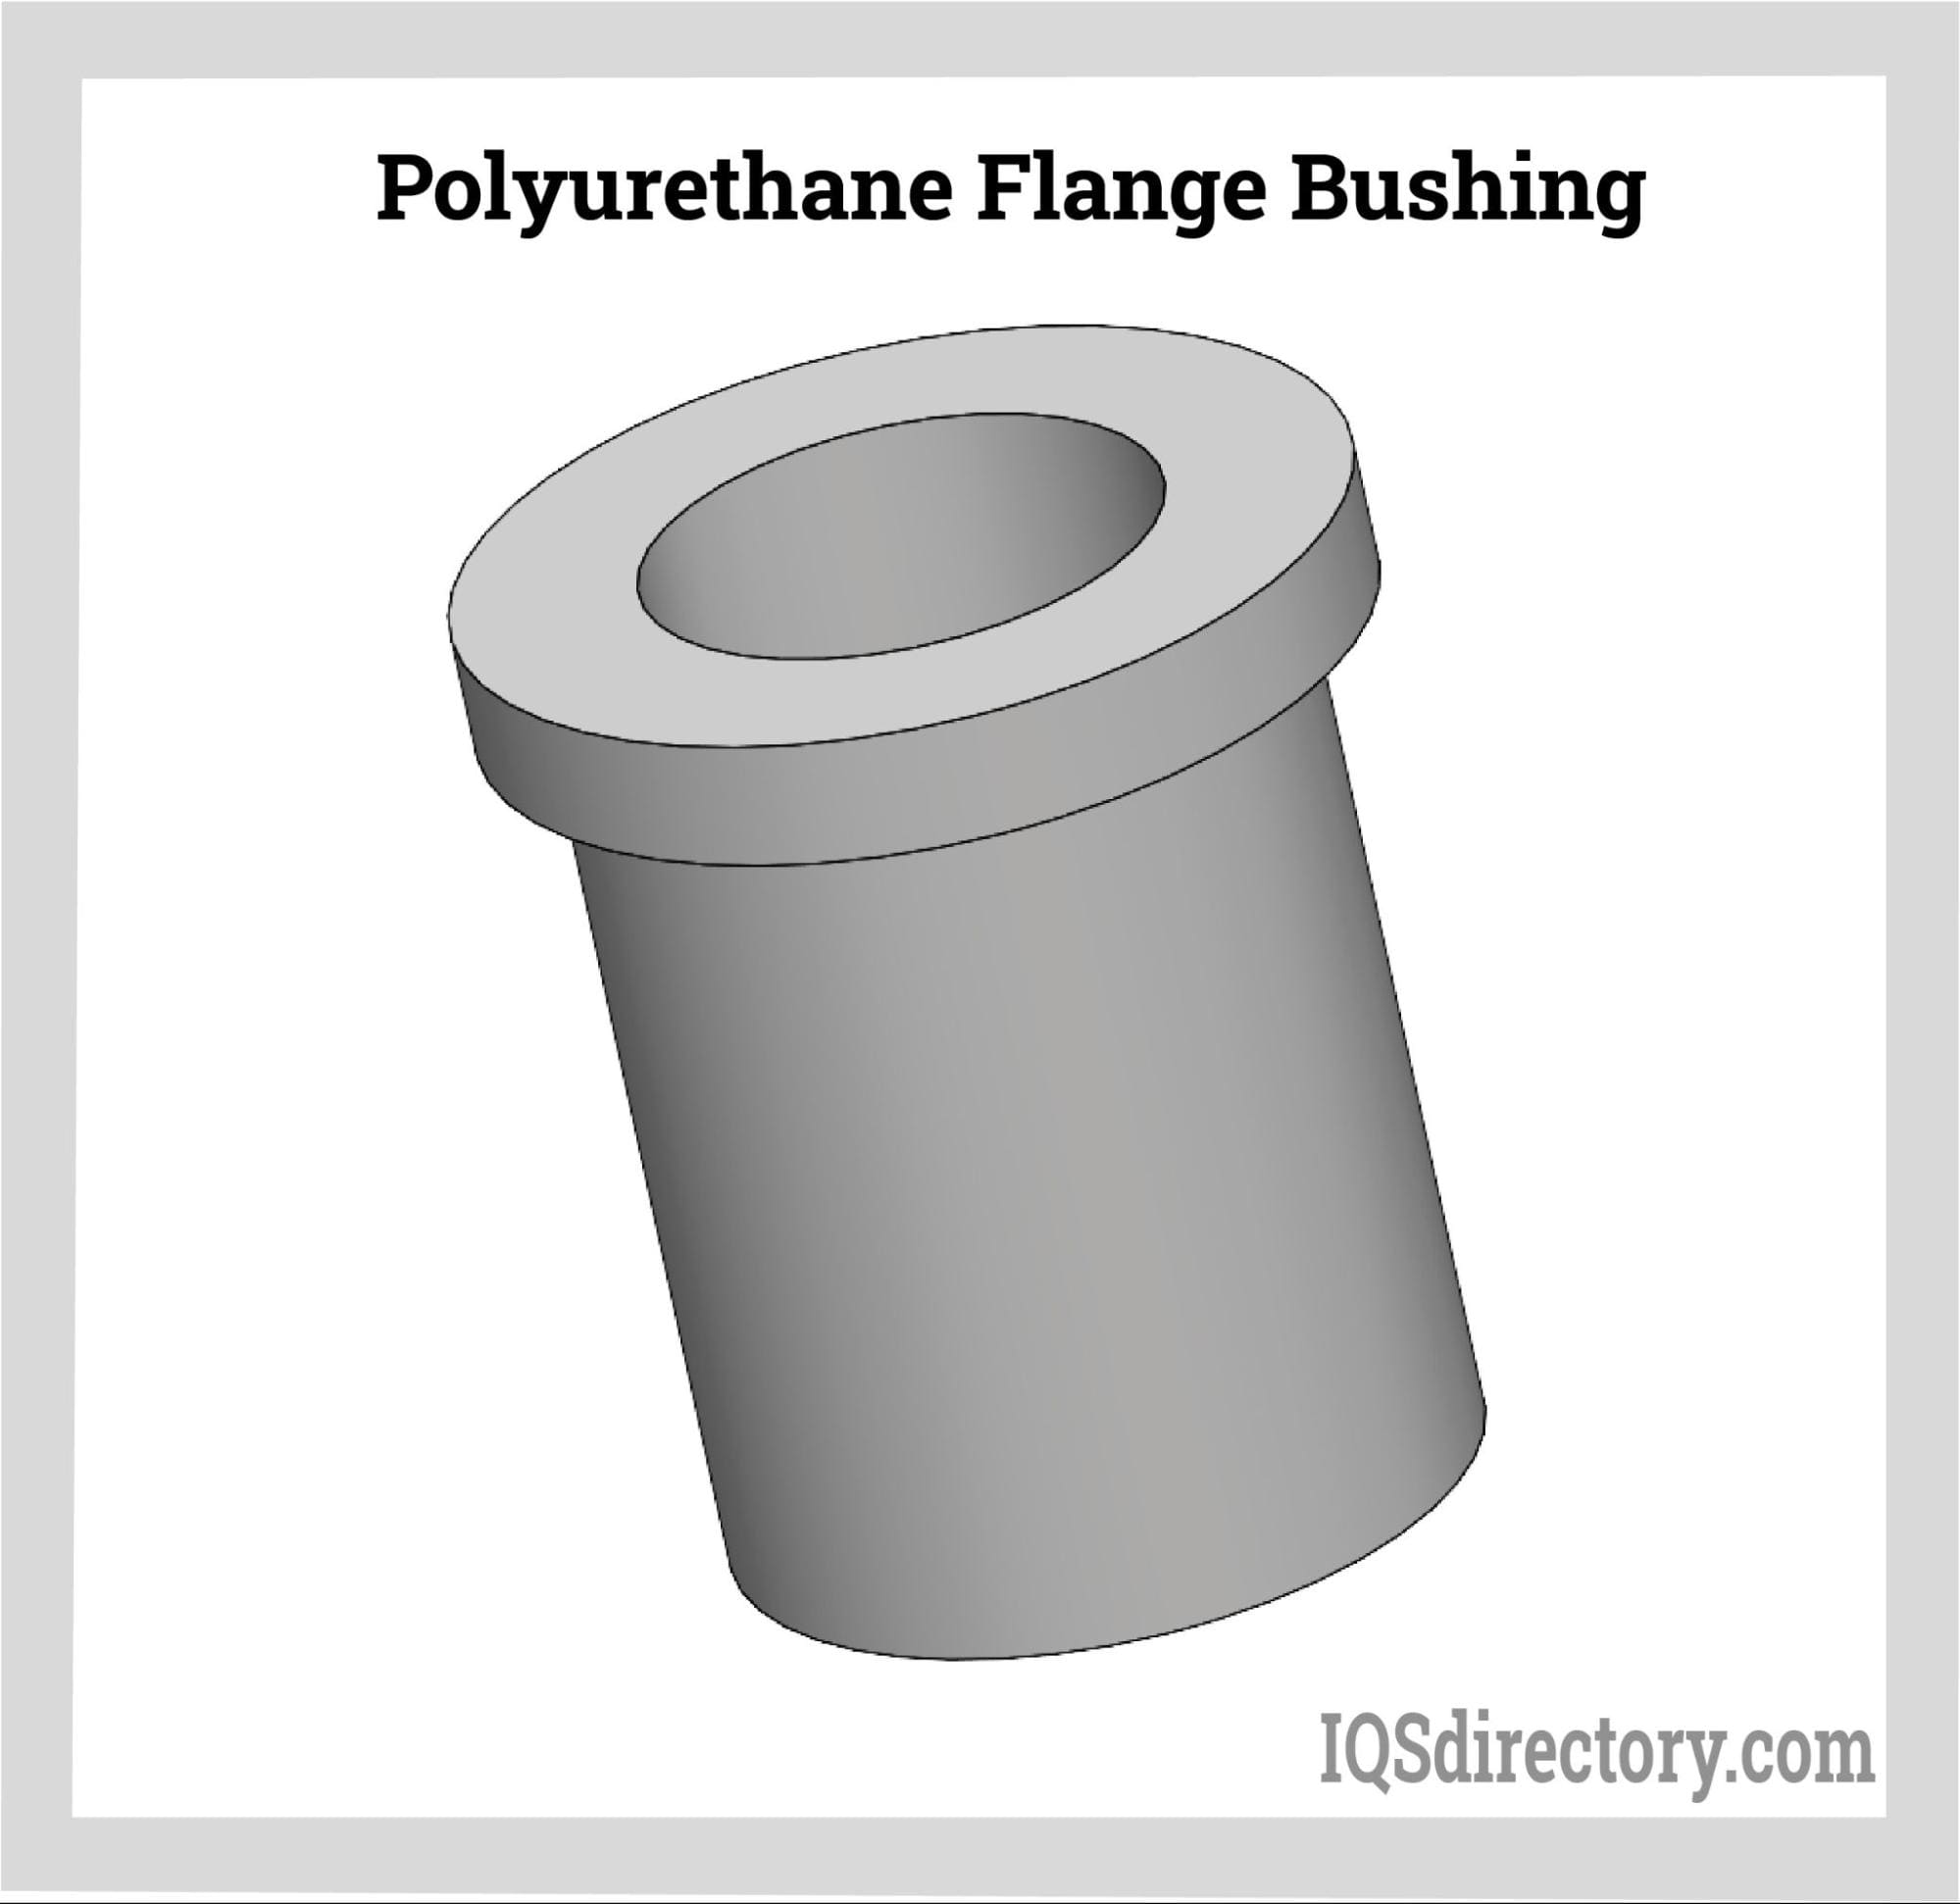 Polyurethane Flange Bushing